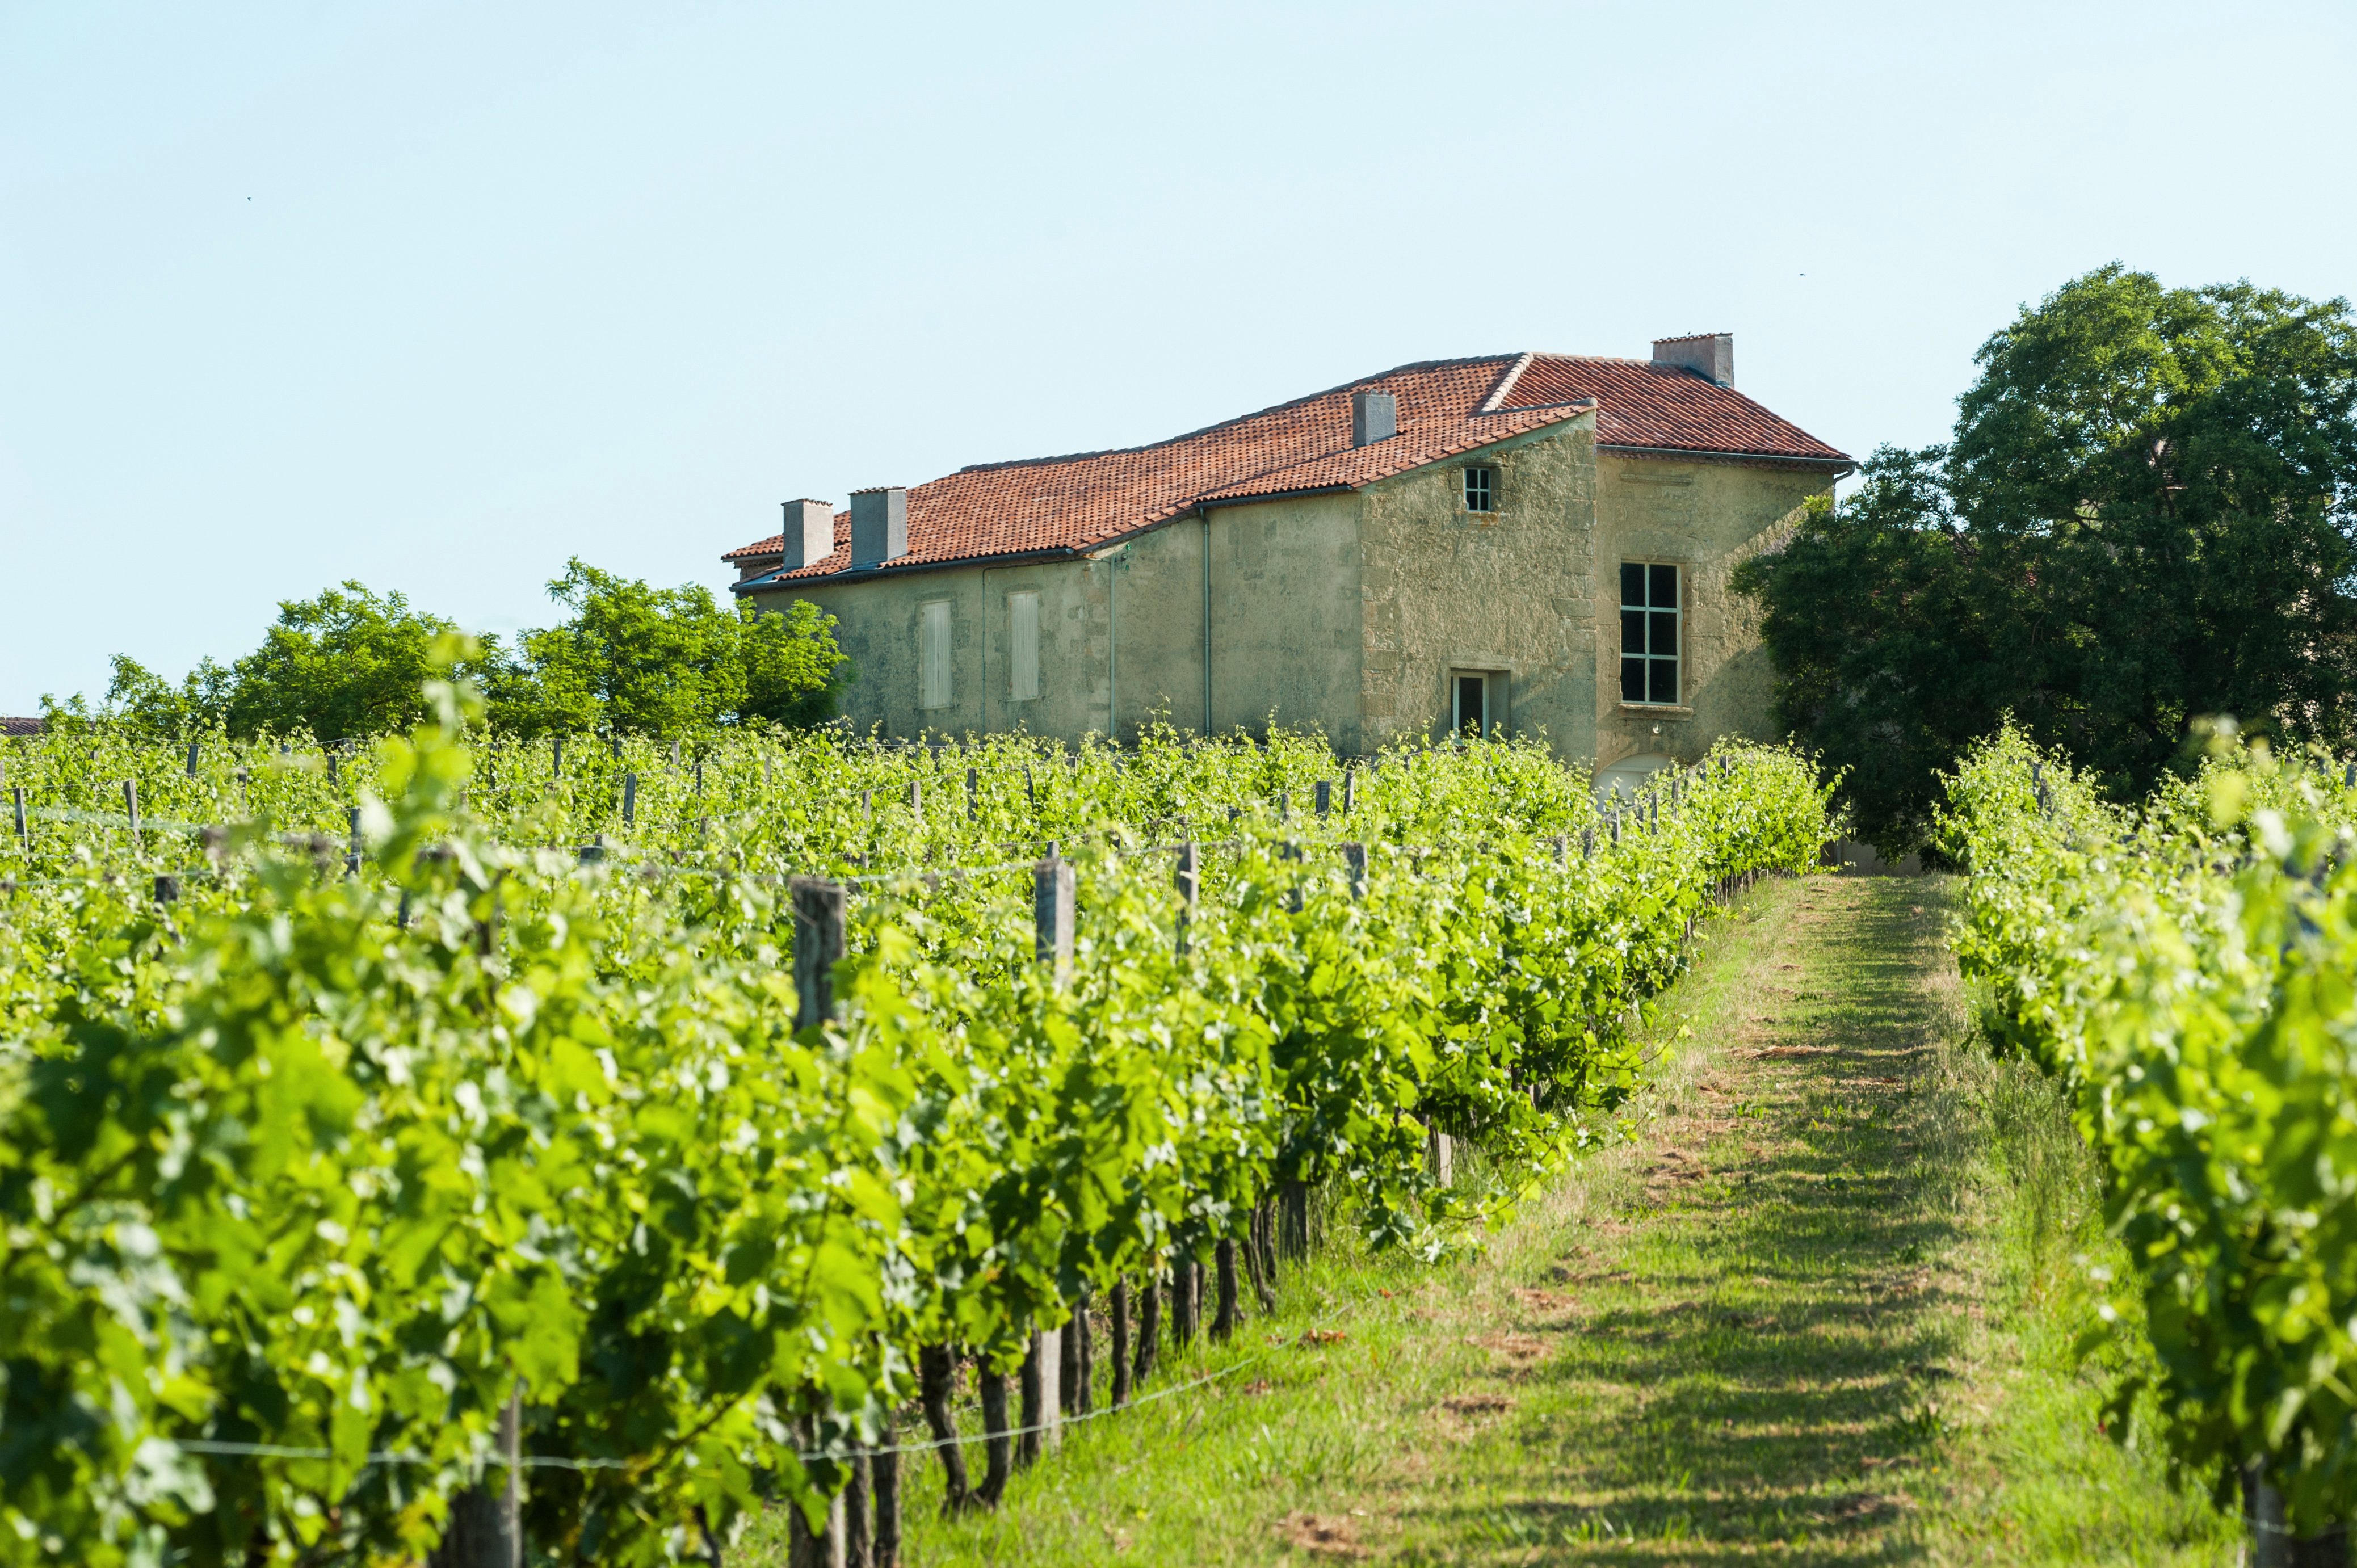 Chateau Argadens（阿戈登斯酒庄） AOC 波尔多（Bordeaux） 白葡萄酒 - white 2016